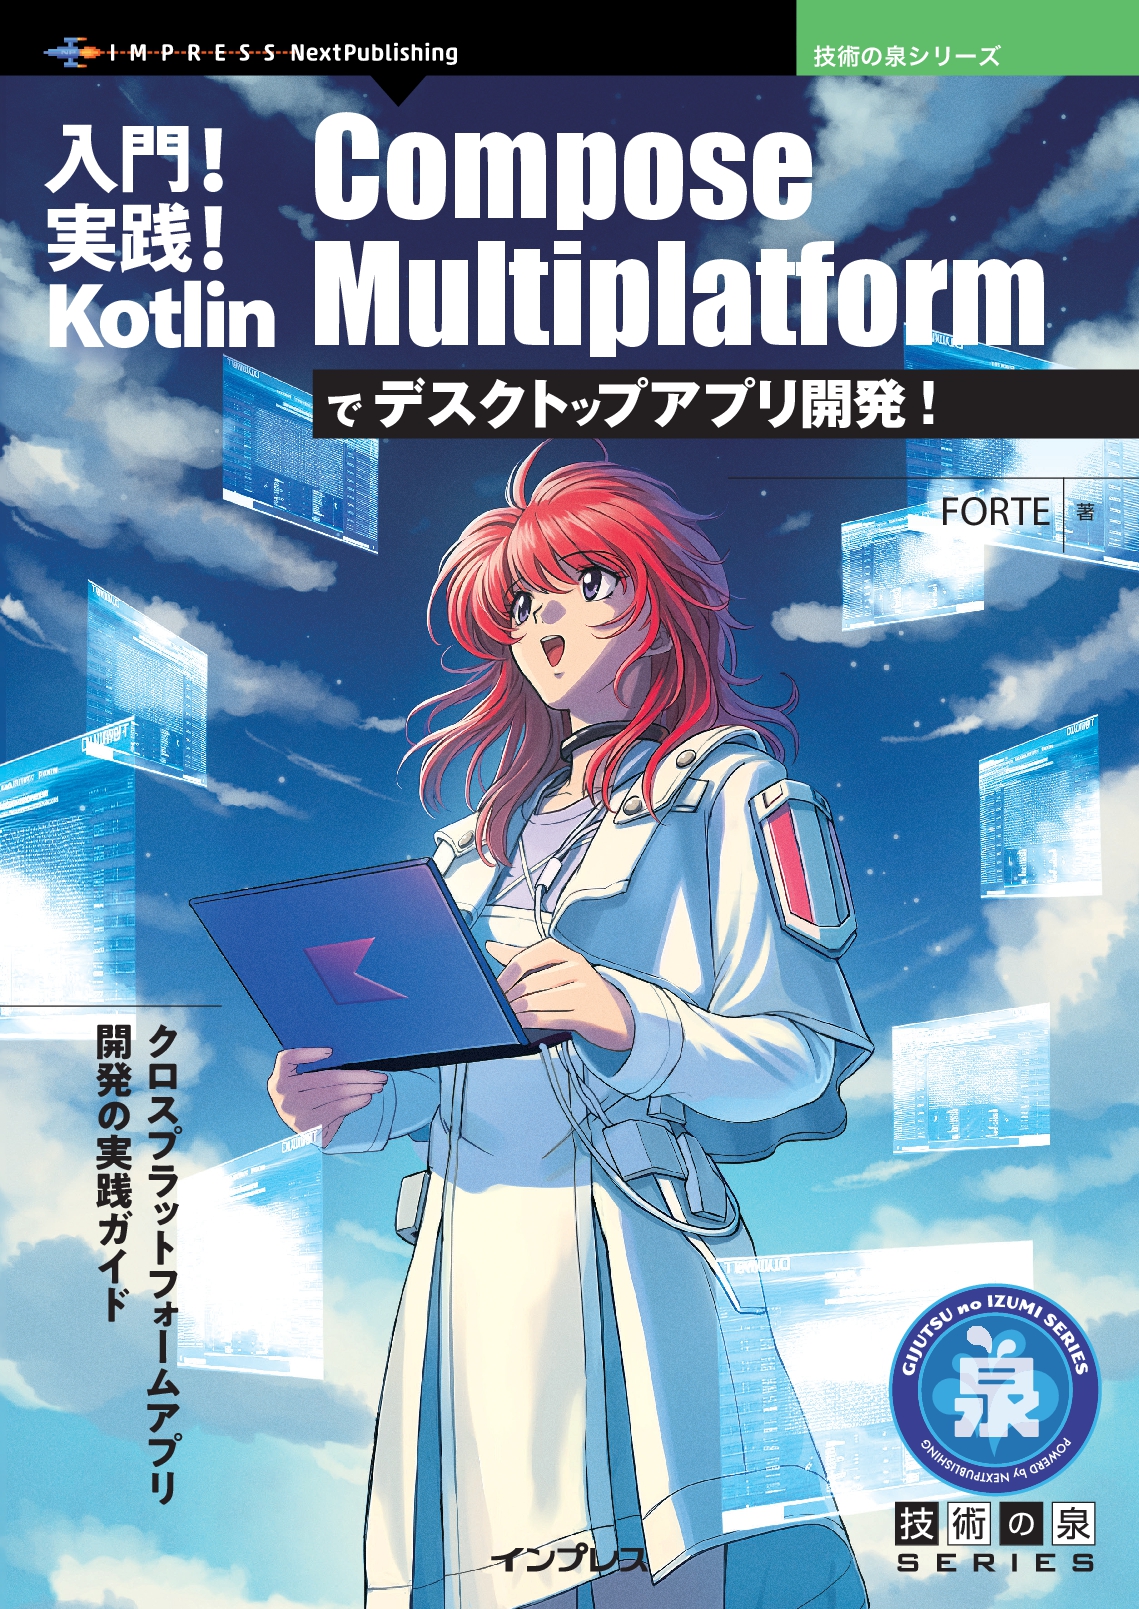 入門!実践! Kotlin Compose Multiplatformでデスクトップアプリ開発!